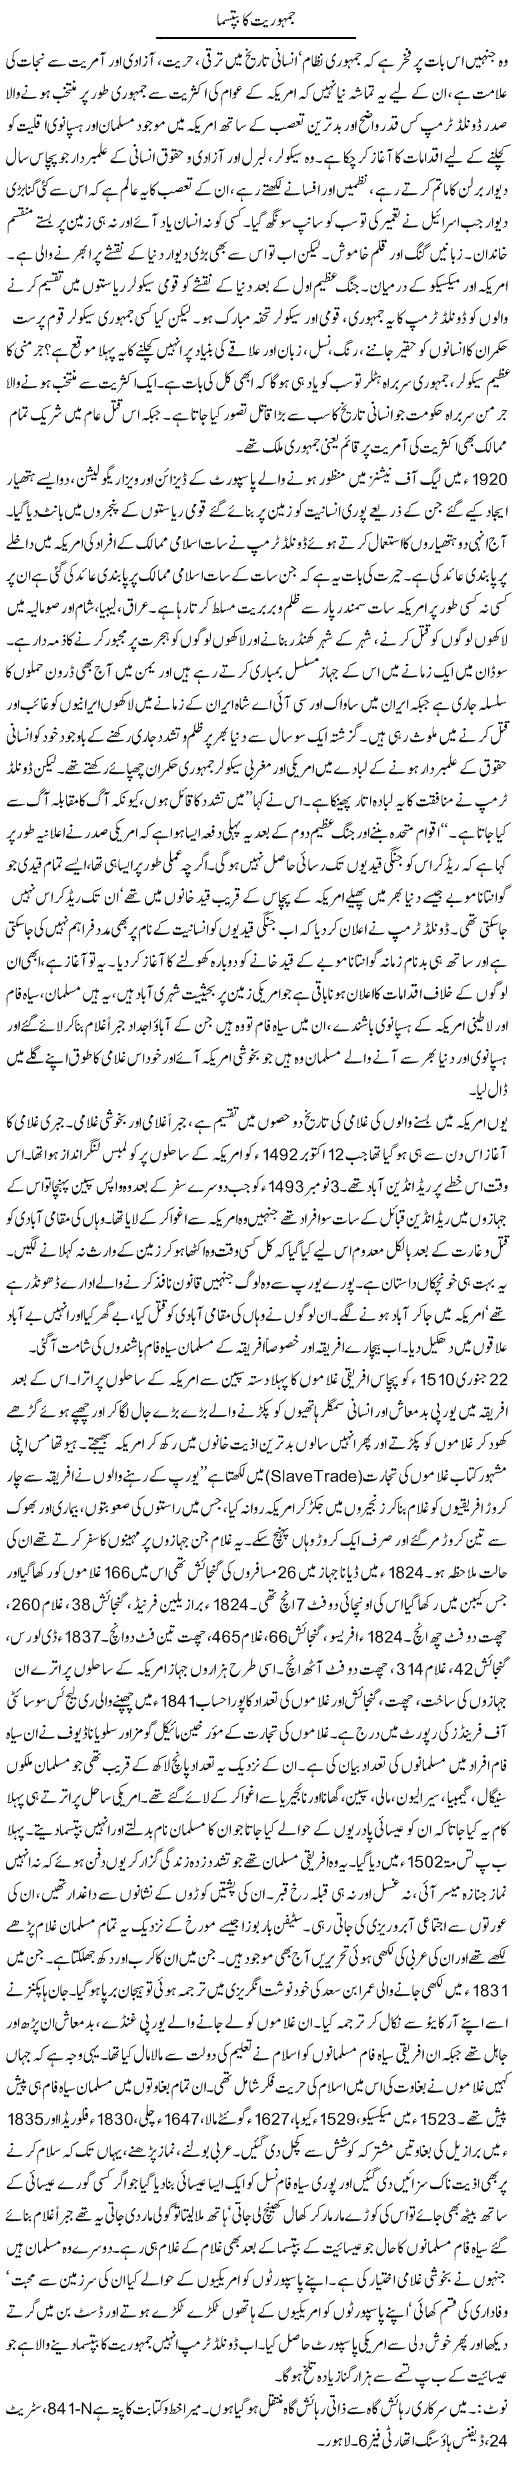 Jamhoriat Ka Bip-Tasma | Orya Maqbool Jan | Daily Urdu Columns